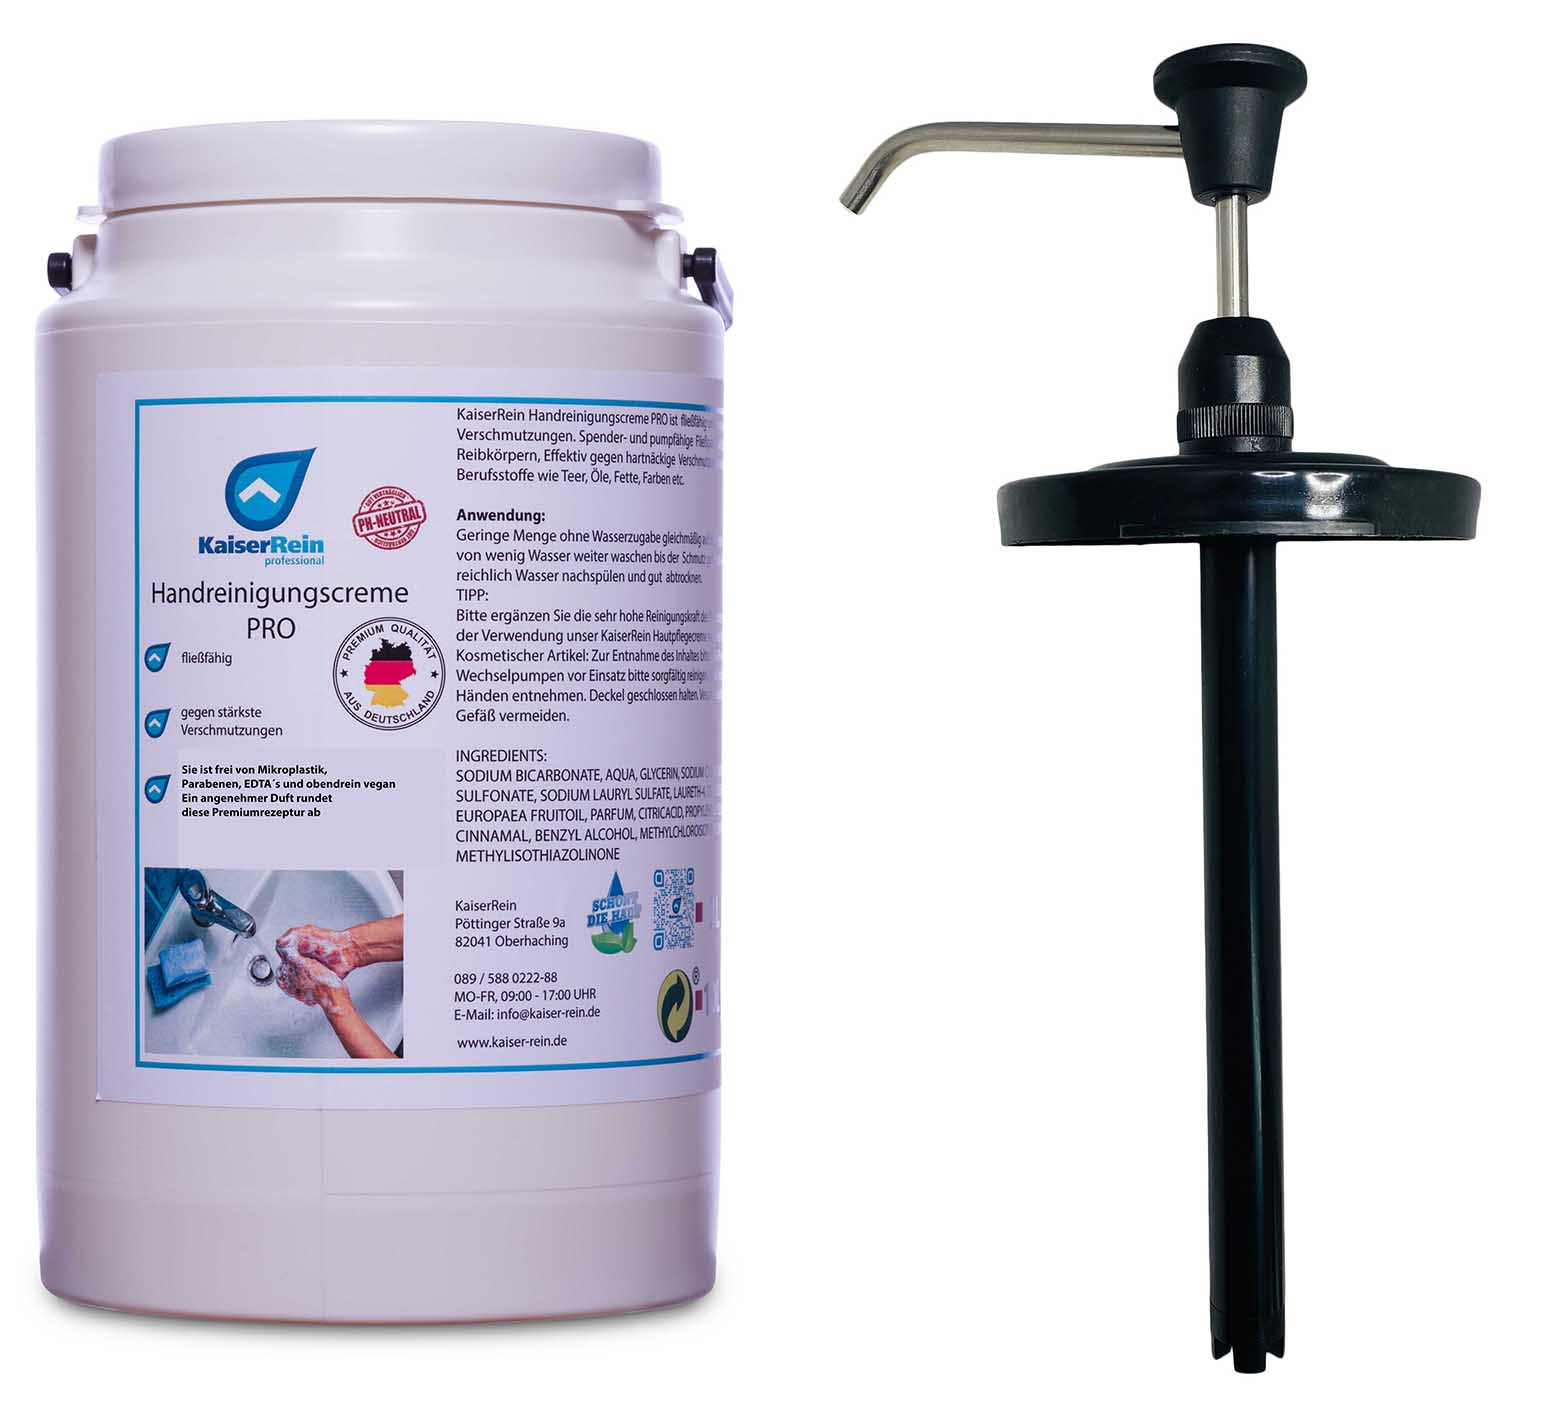 Handpumpe für Handreinigungscreme PRO 3 L Eimer gegen stärkste  Verschmutzungen